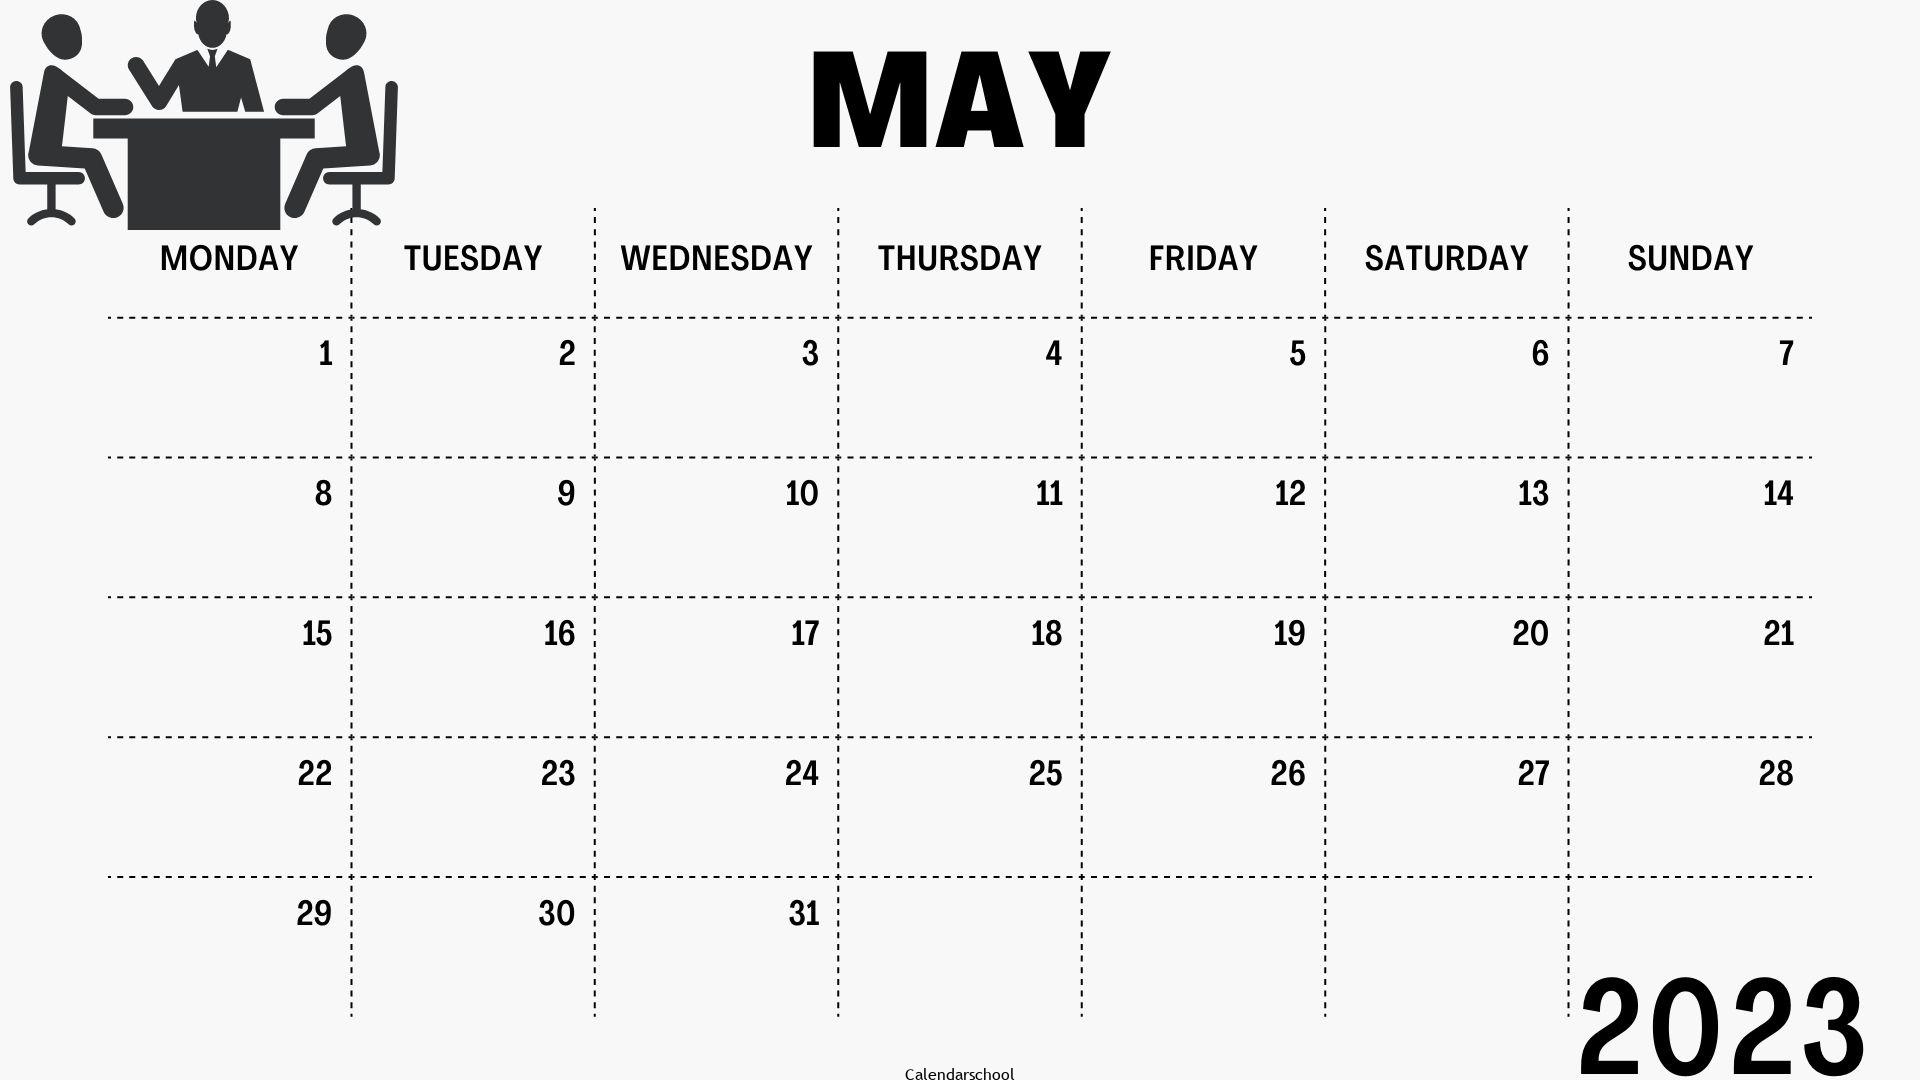 May 2023 Islamic Calendar